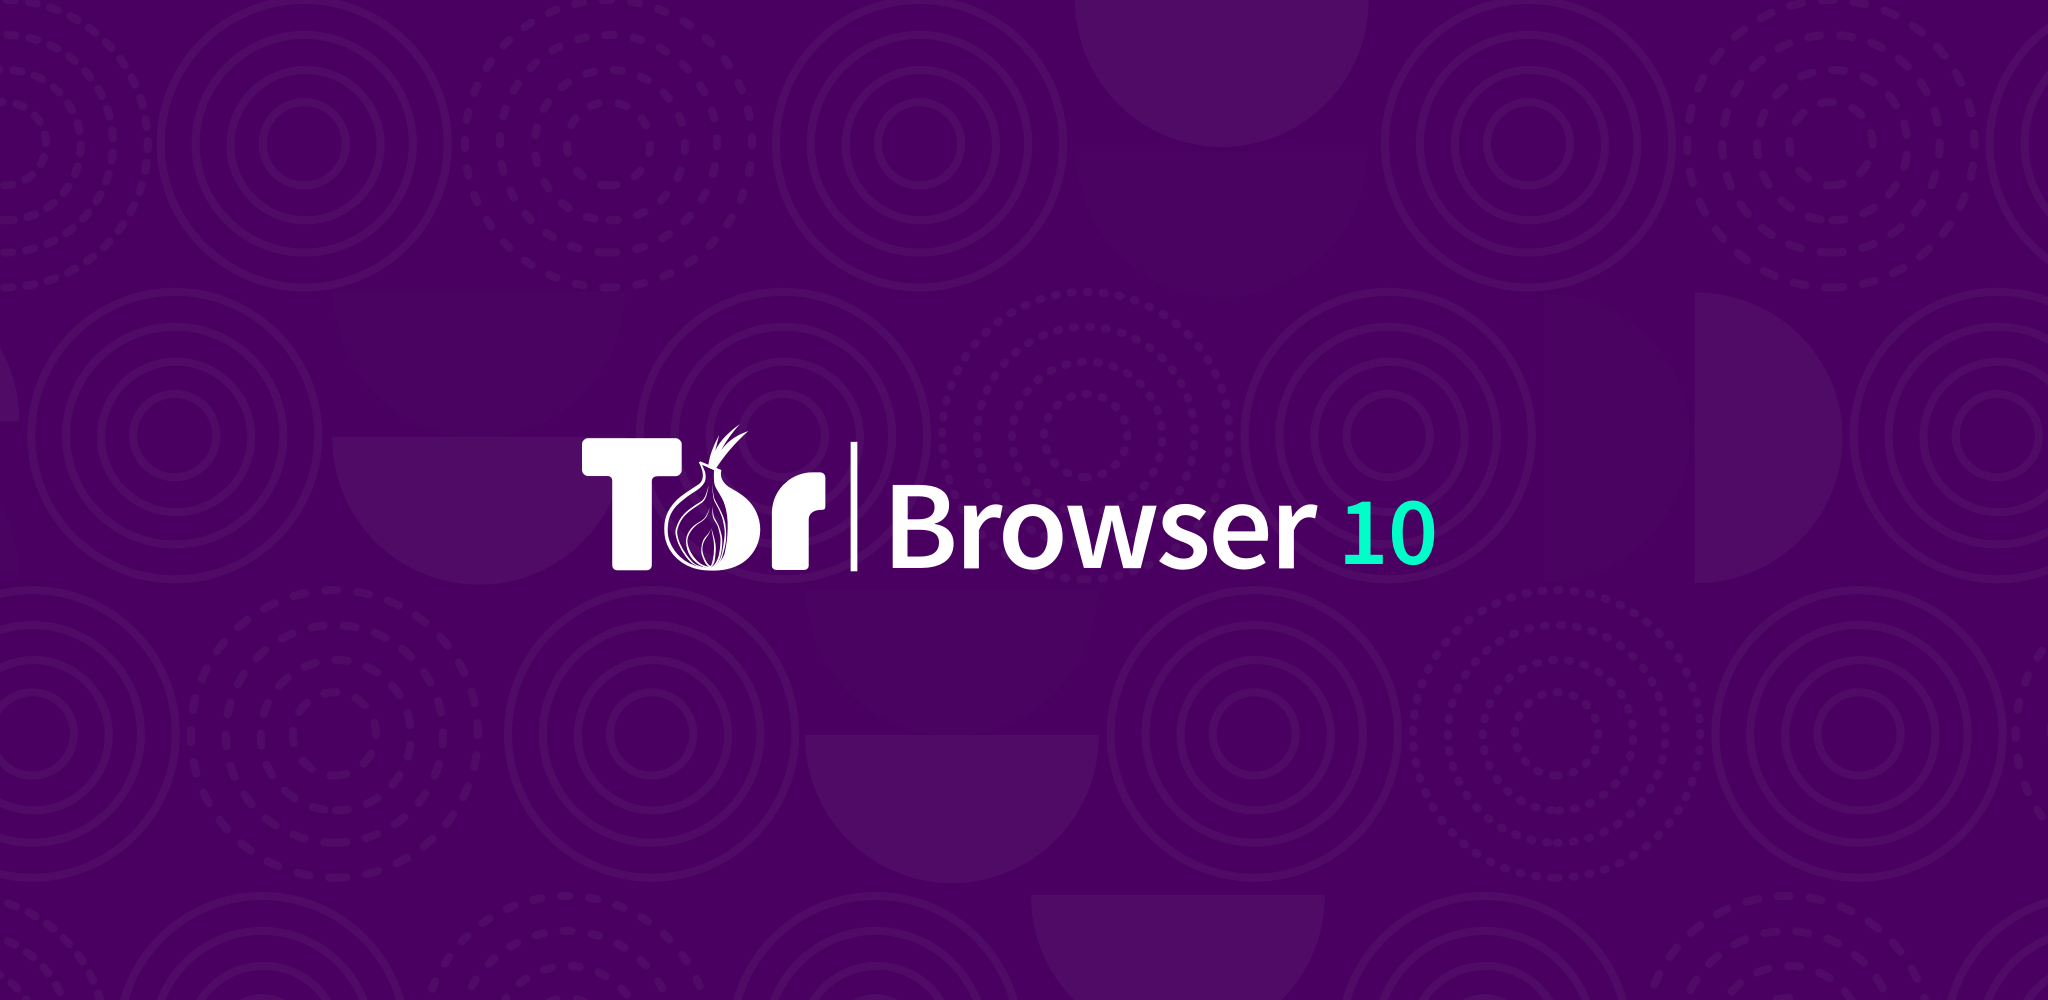 Tor browser openbsd tor browser скачать бесплатно русская версия mac